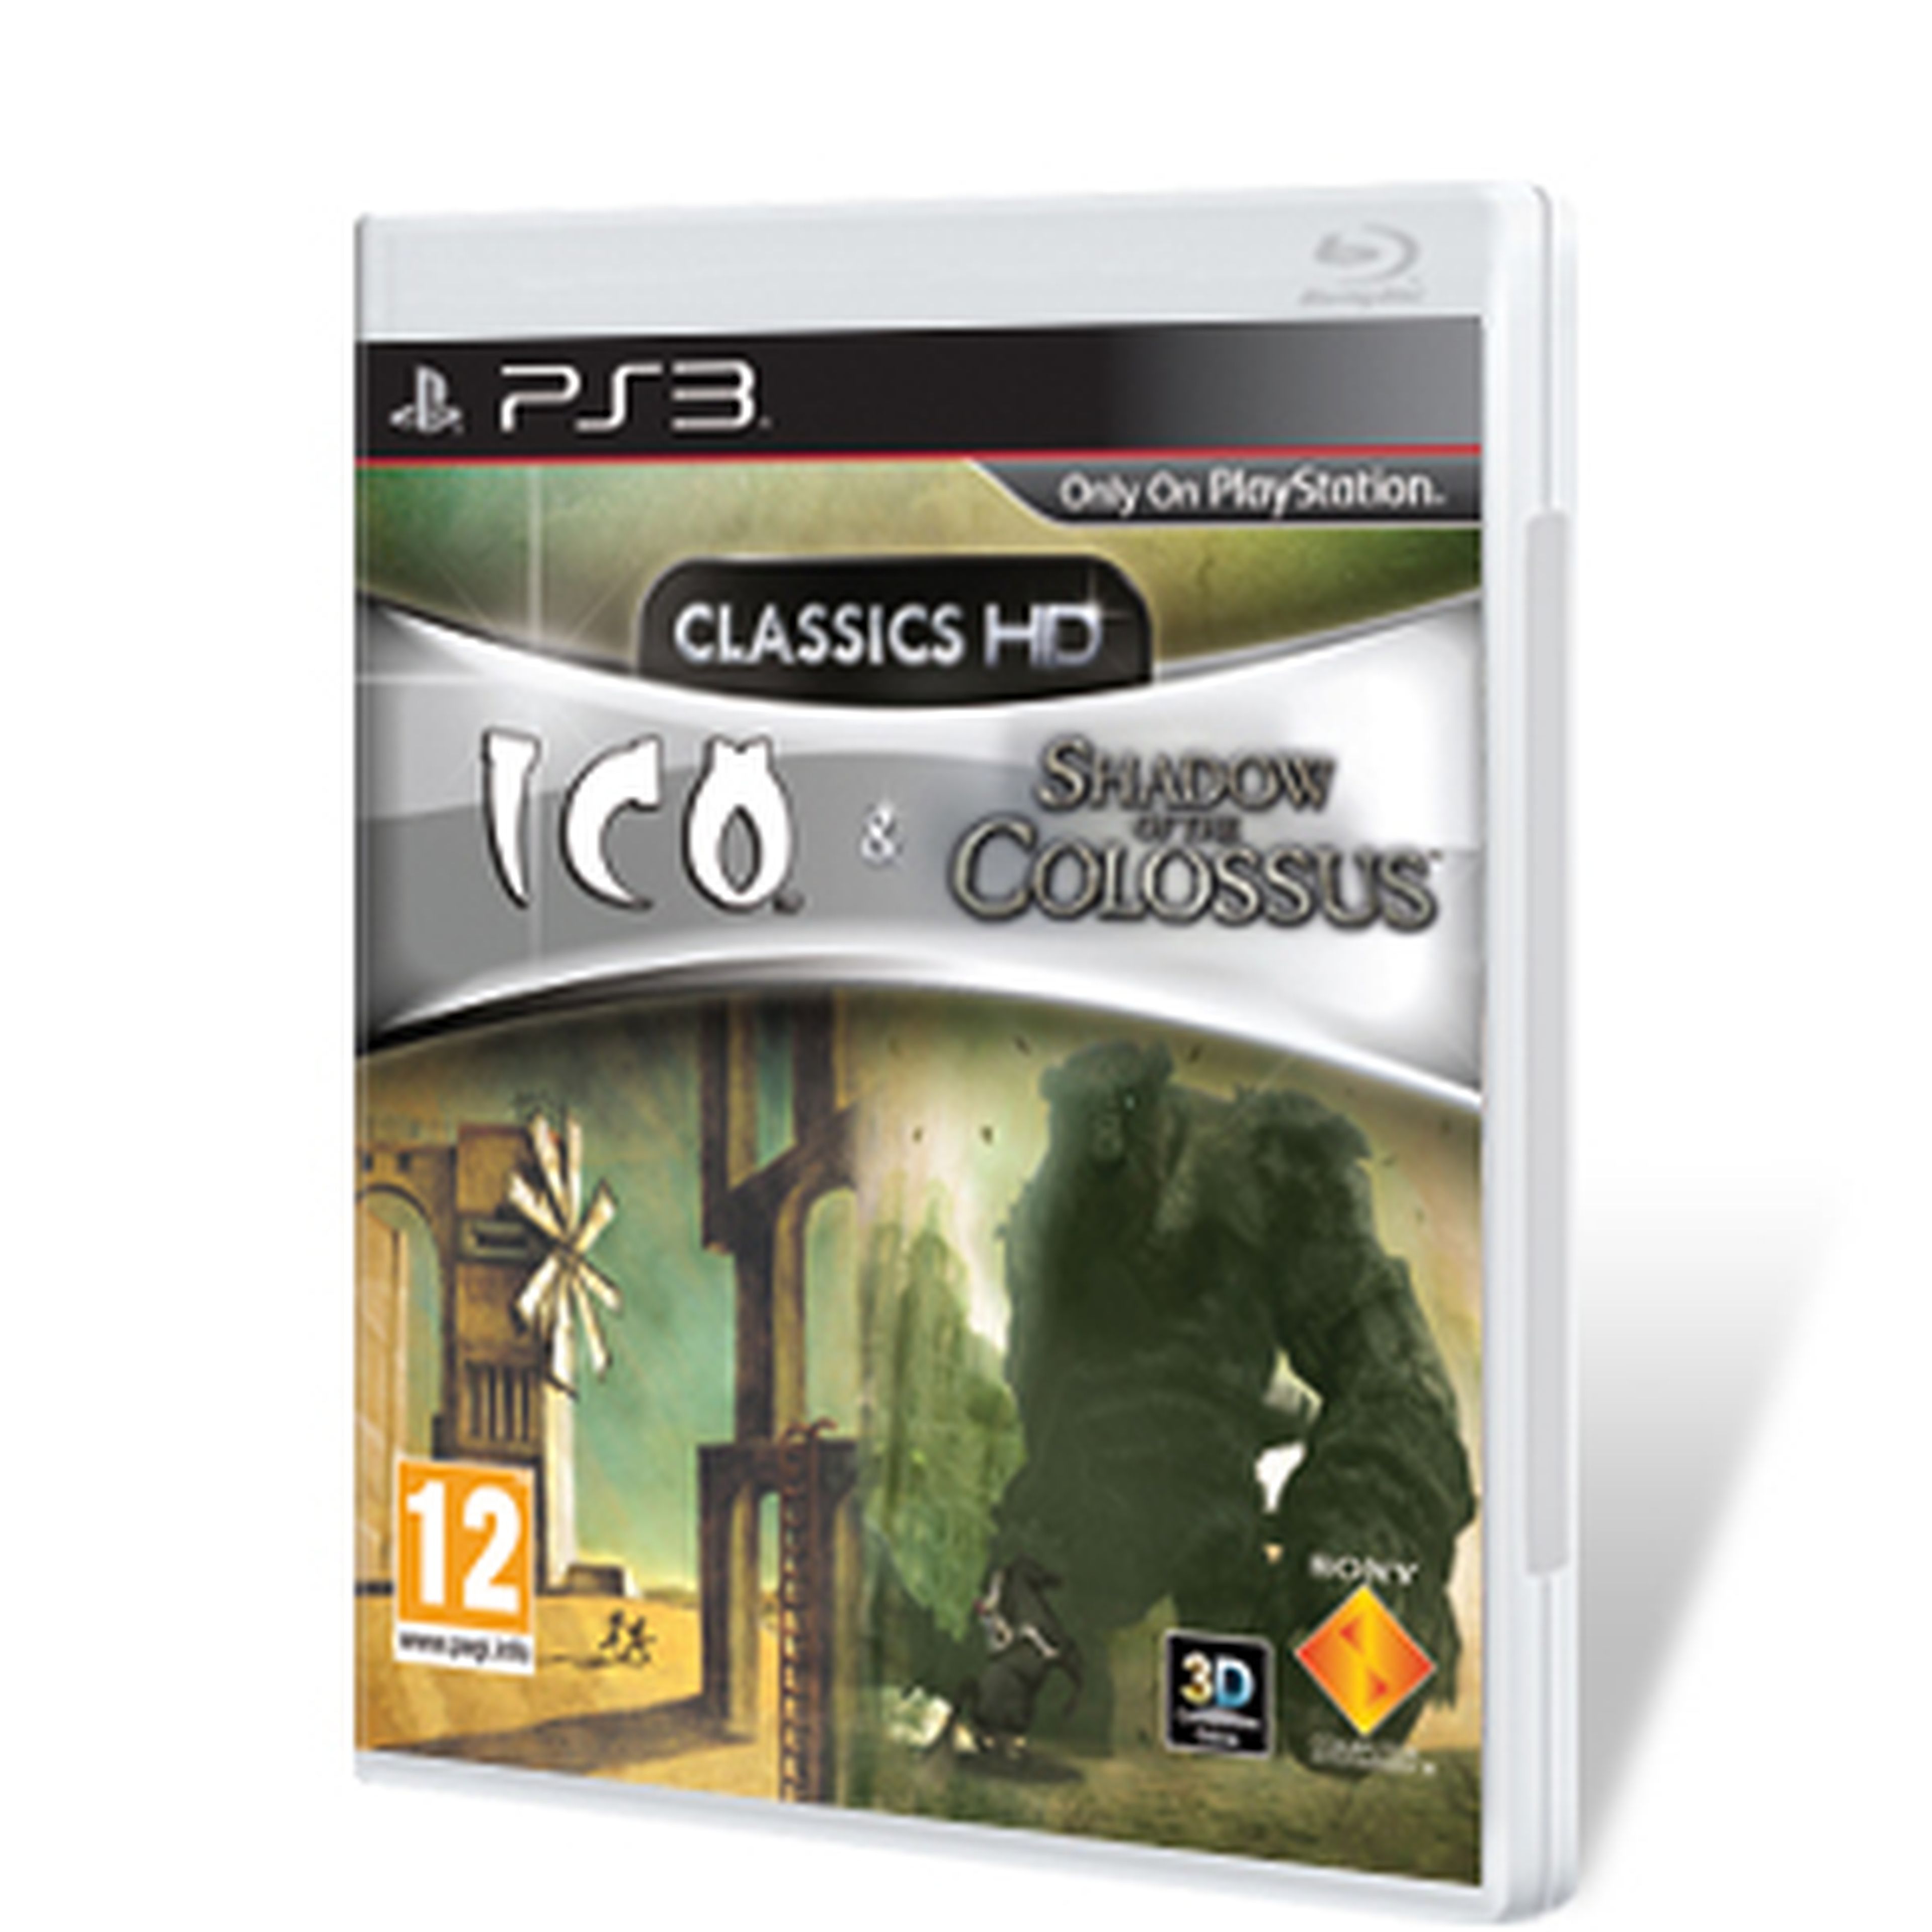 ICO Collection para PS3